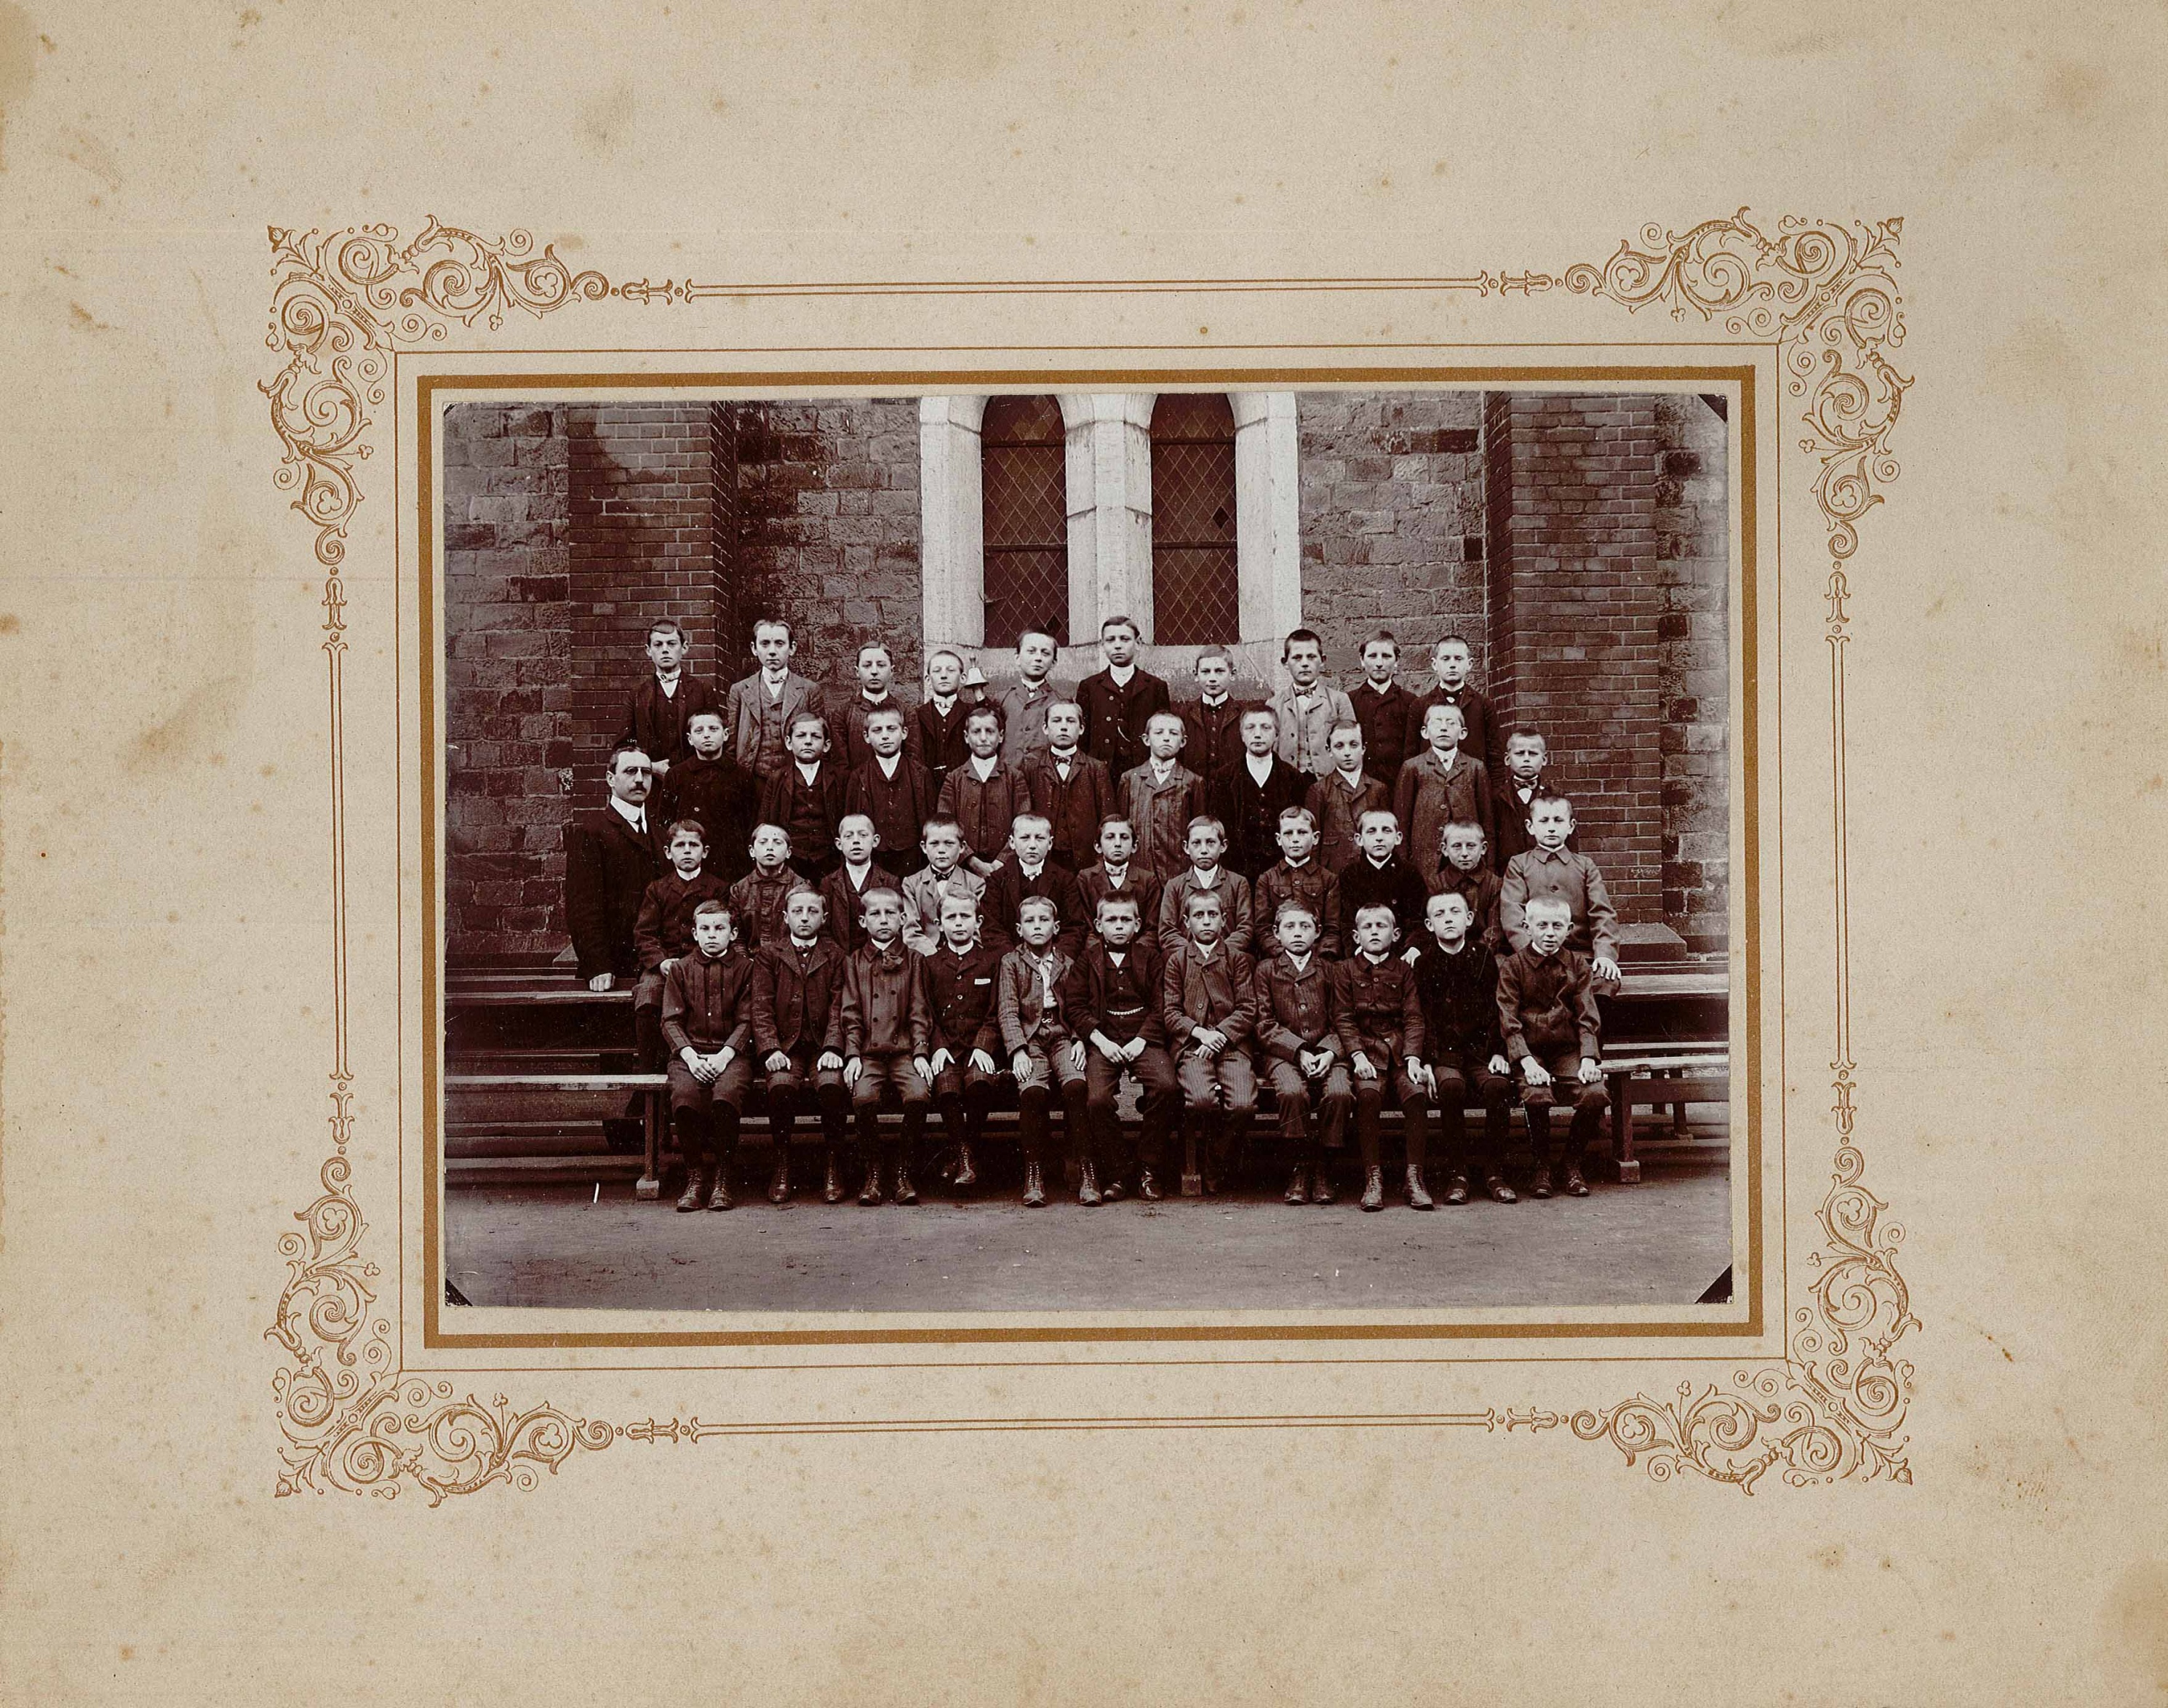 Gruppenfoto einer Jungen-Schulklasse, Stadtschule Wolmirstedt, Anfang 20 Jh.? (Museum Wolmirstedt RR-F)